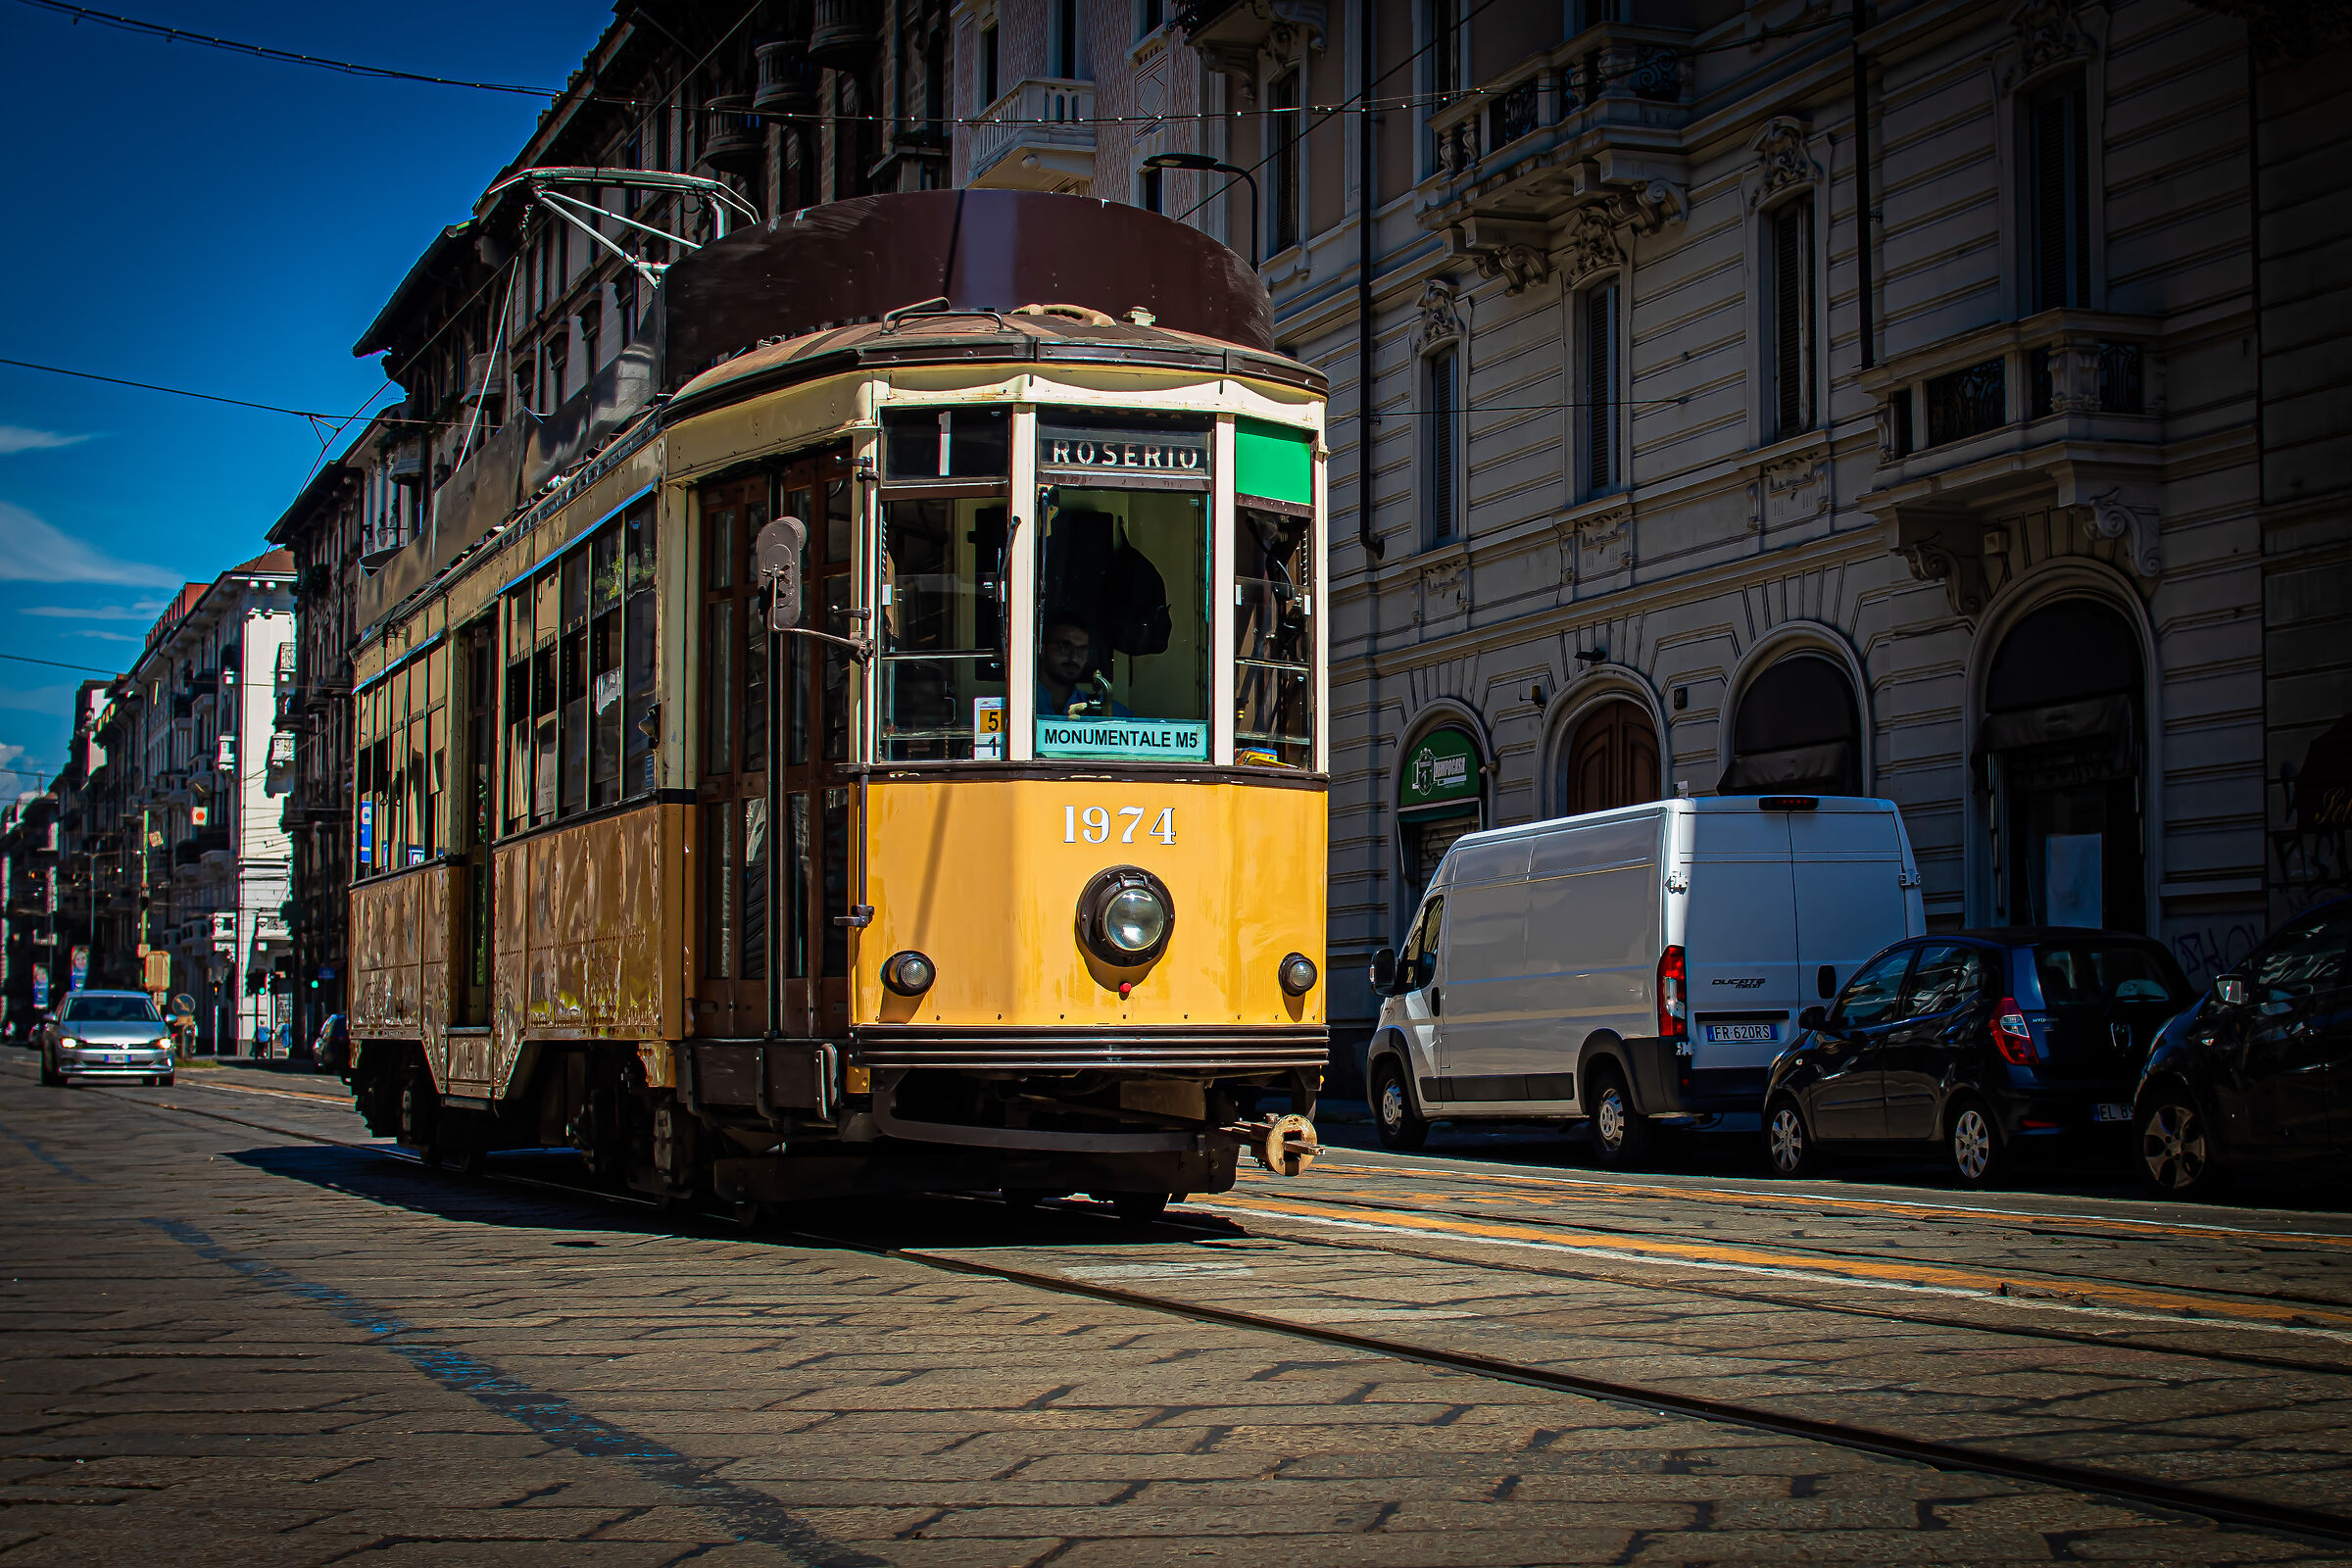 Milan, the tram...